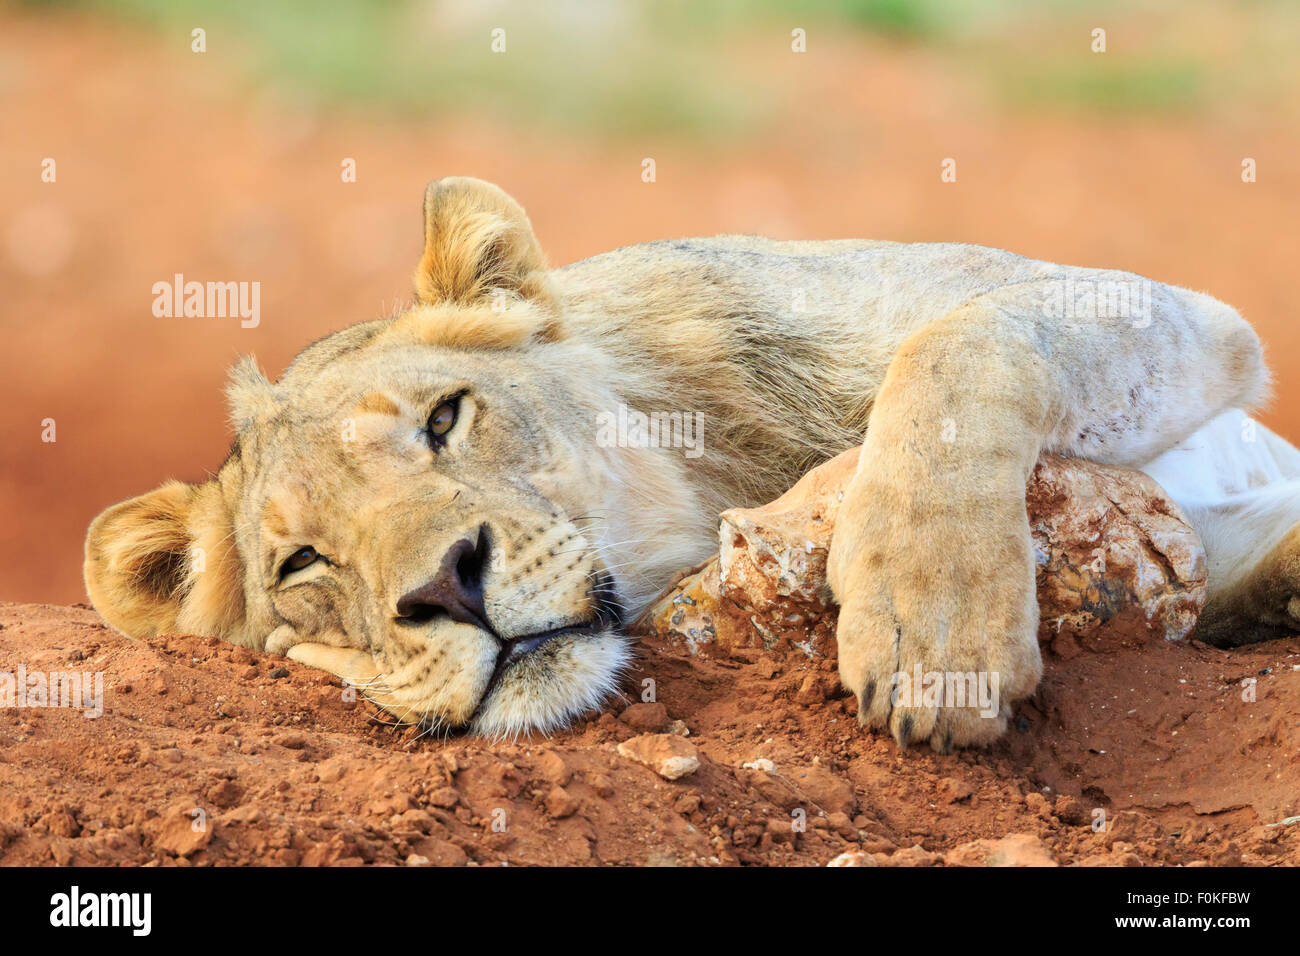 Namibia, Etosha National Park, lazy young lion Stock Photo